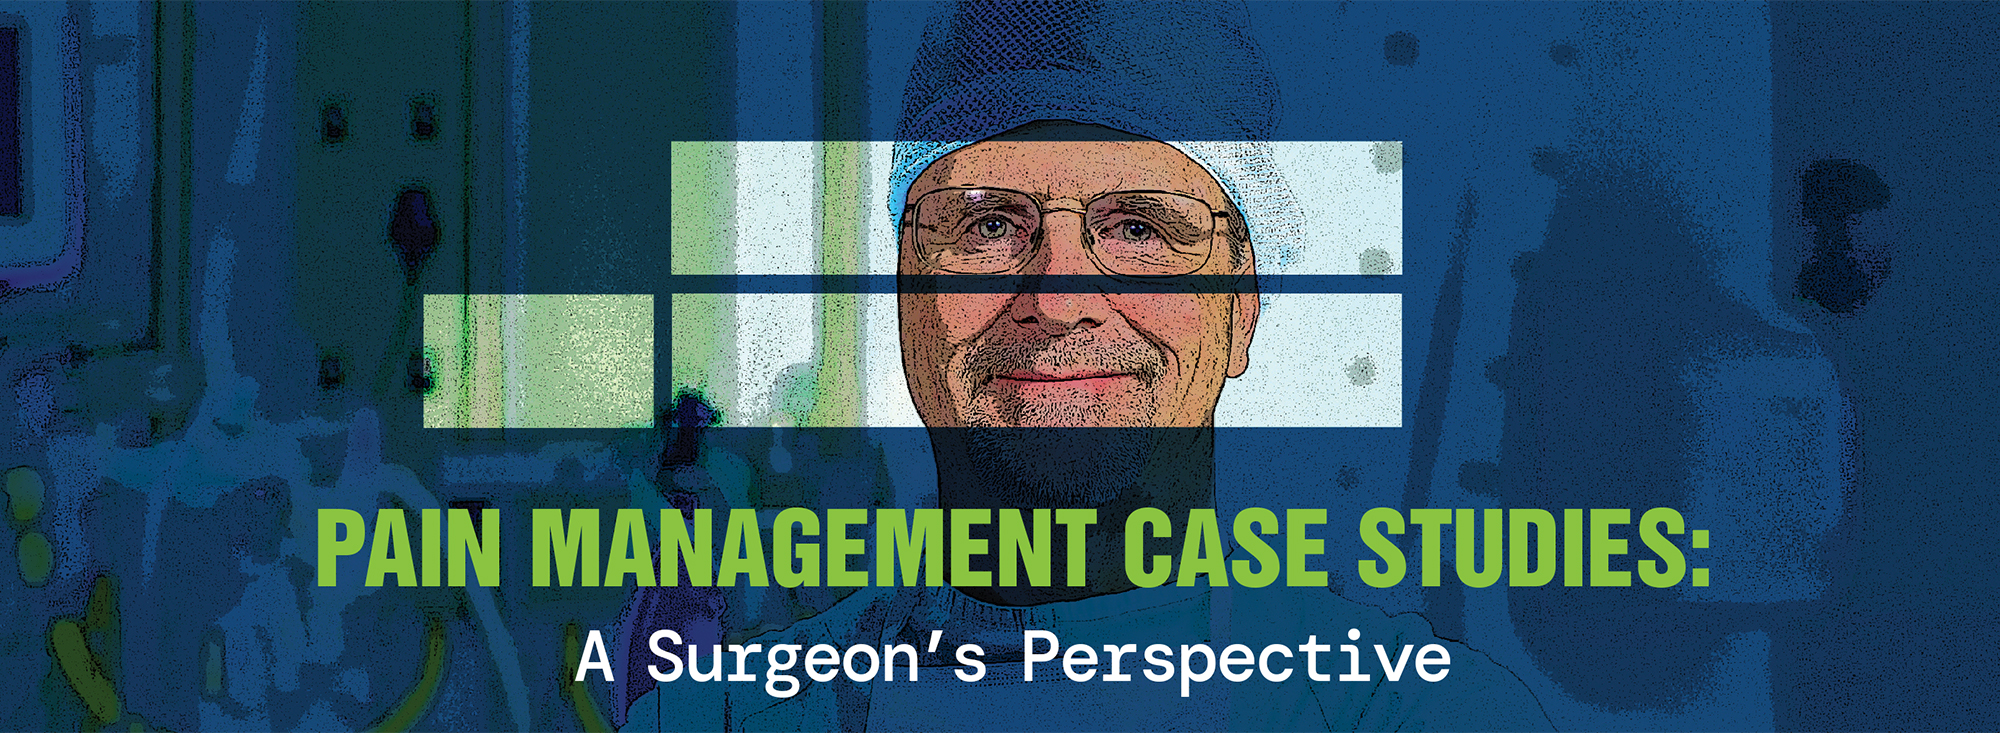 Pain Management Case Studies: A Surgeon’s Perspective